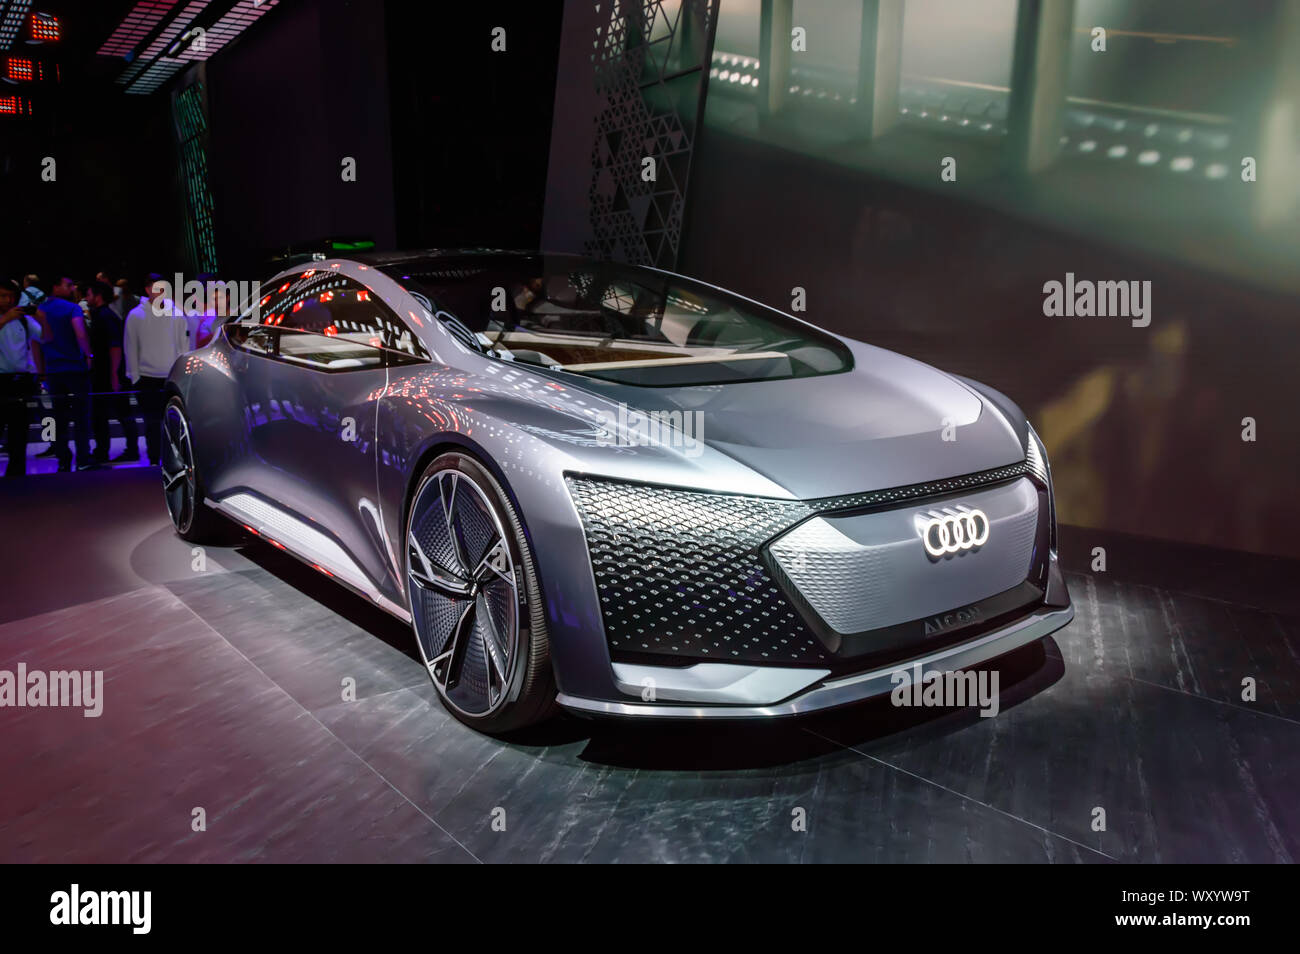 Nuova Audi grigio Aicon autonome concept car presentata al IAA 2019 Foto Stock